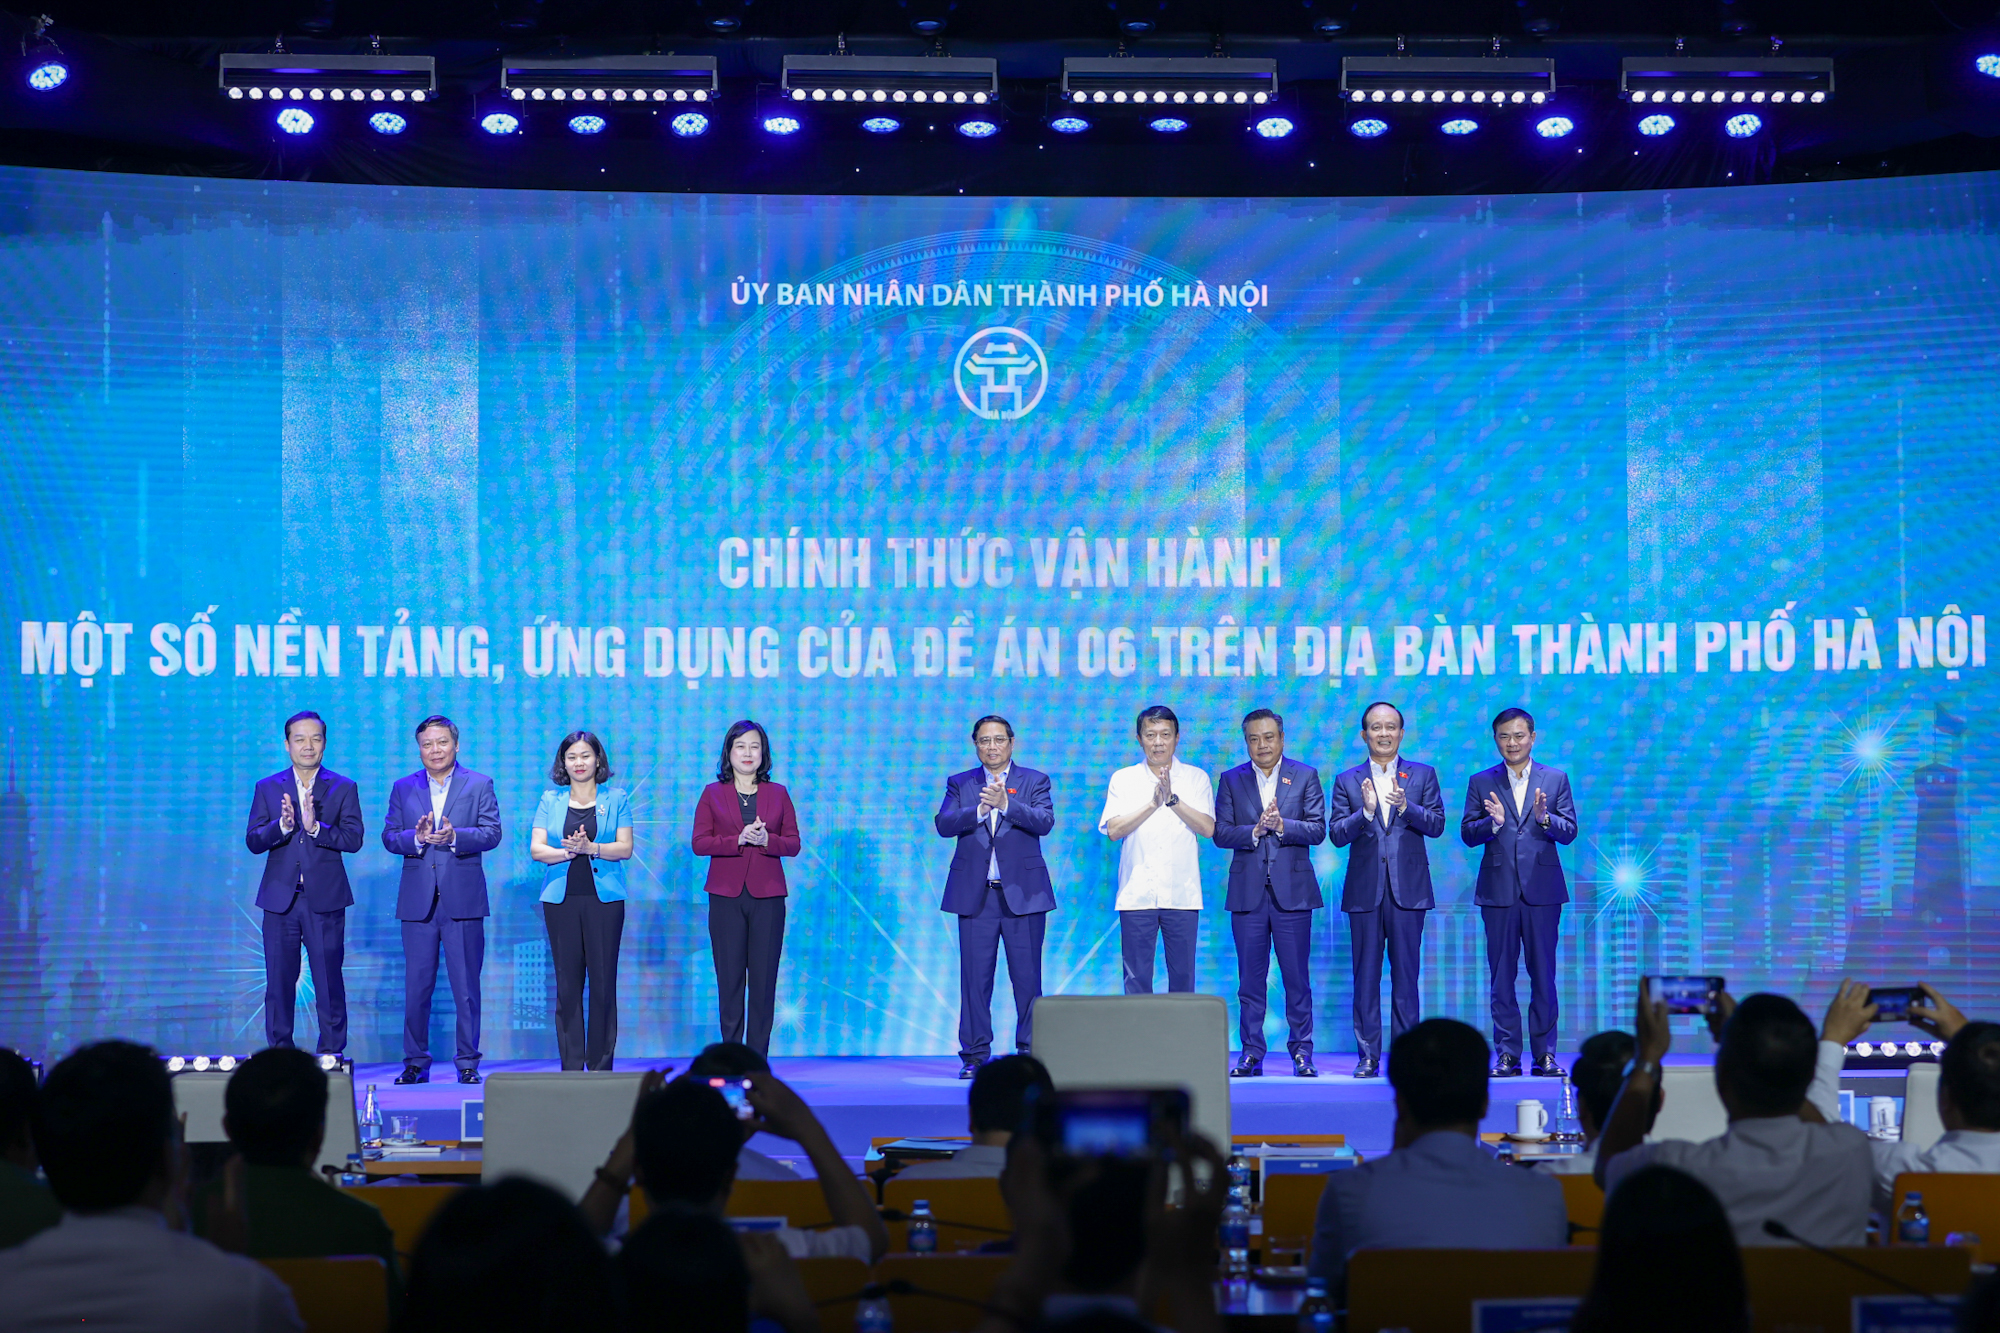 Thủ tướng Phạm Minh Chính và các đại biểu thực hiện nghi thức vận hành các nền tảng, ứng dụng của Đề án 06 trên địa bàn TP. Hà Nội - Ảnh: VGP/Nhật Bắc